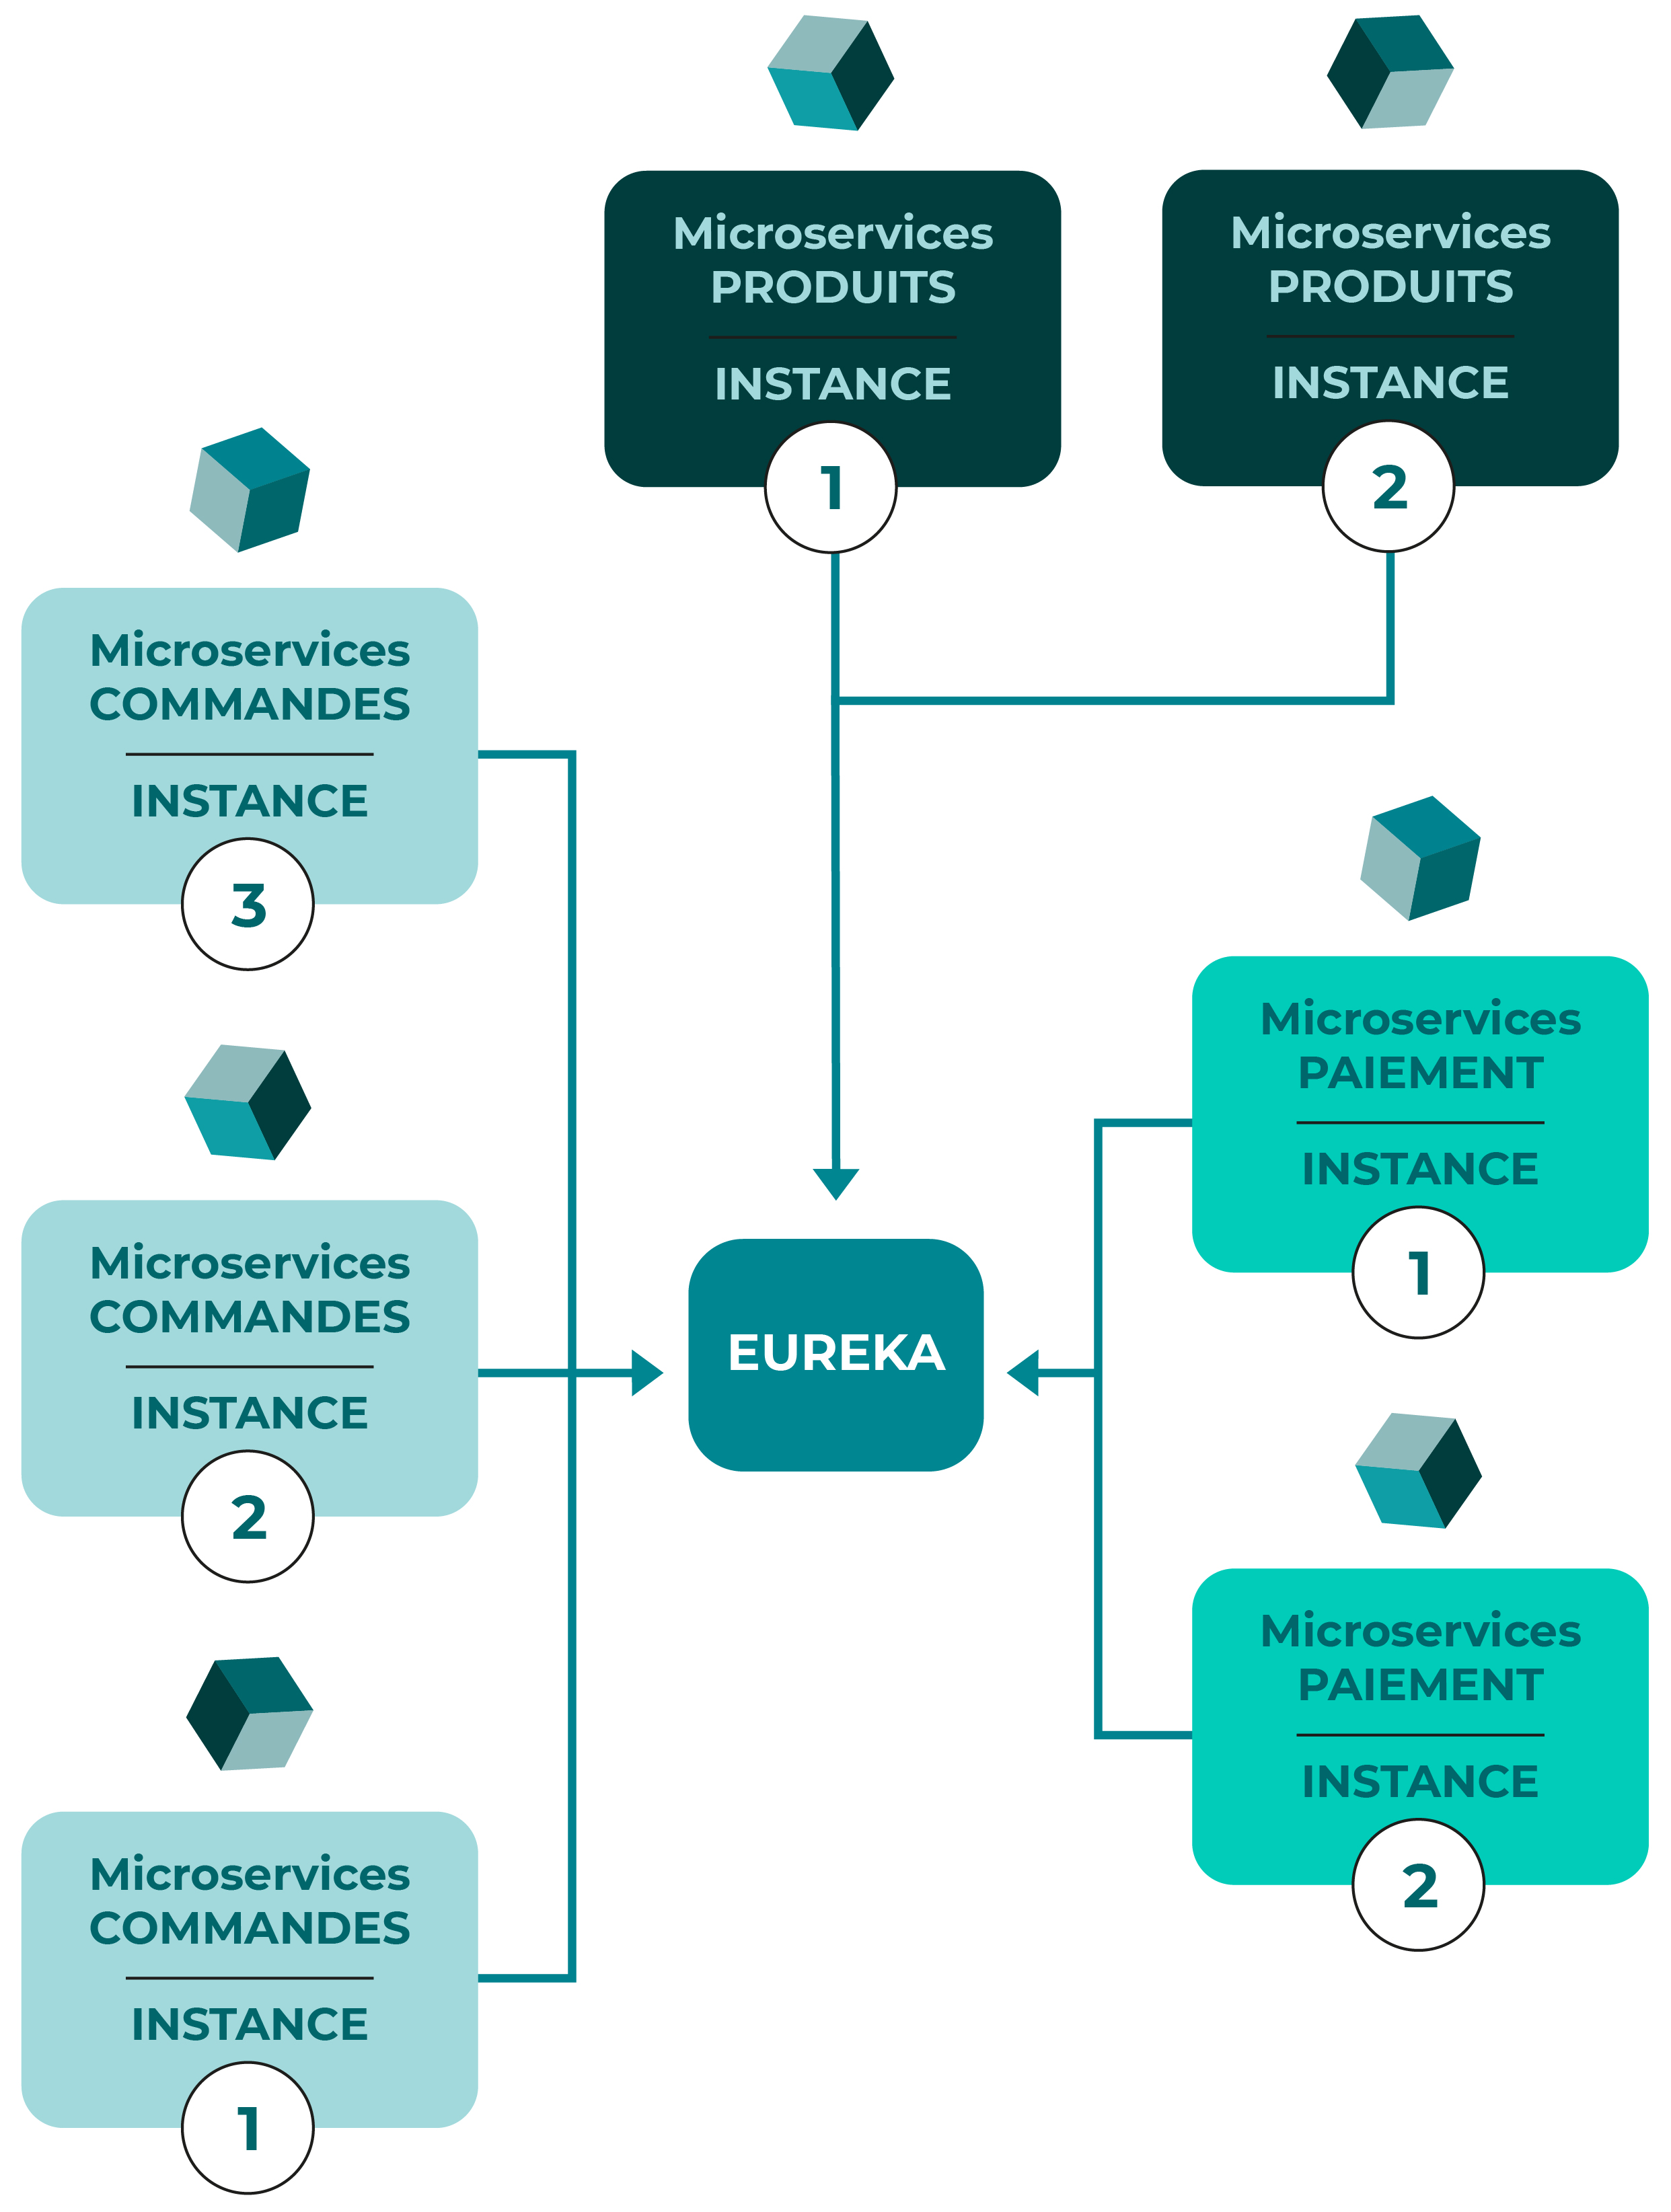 Une fois en place, les instances des microservices viennent s'enregistrer dans le registre d'Eureka. Pour appeler un microservice, il suffit de piocher dans cette liste d'instances qu'Eureka expose via une API REST.